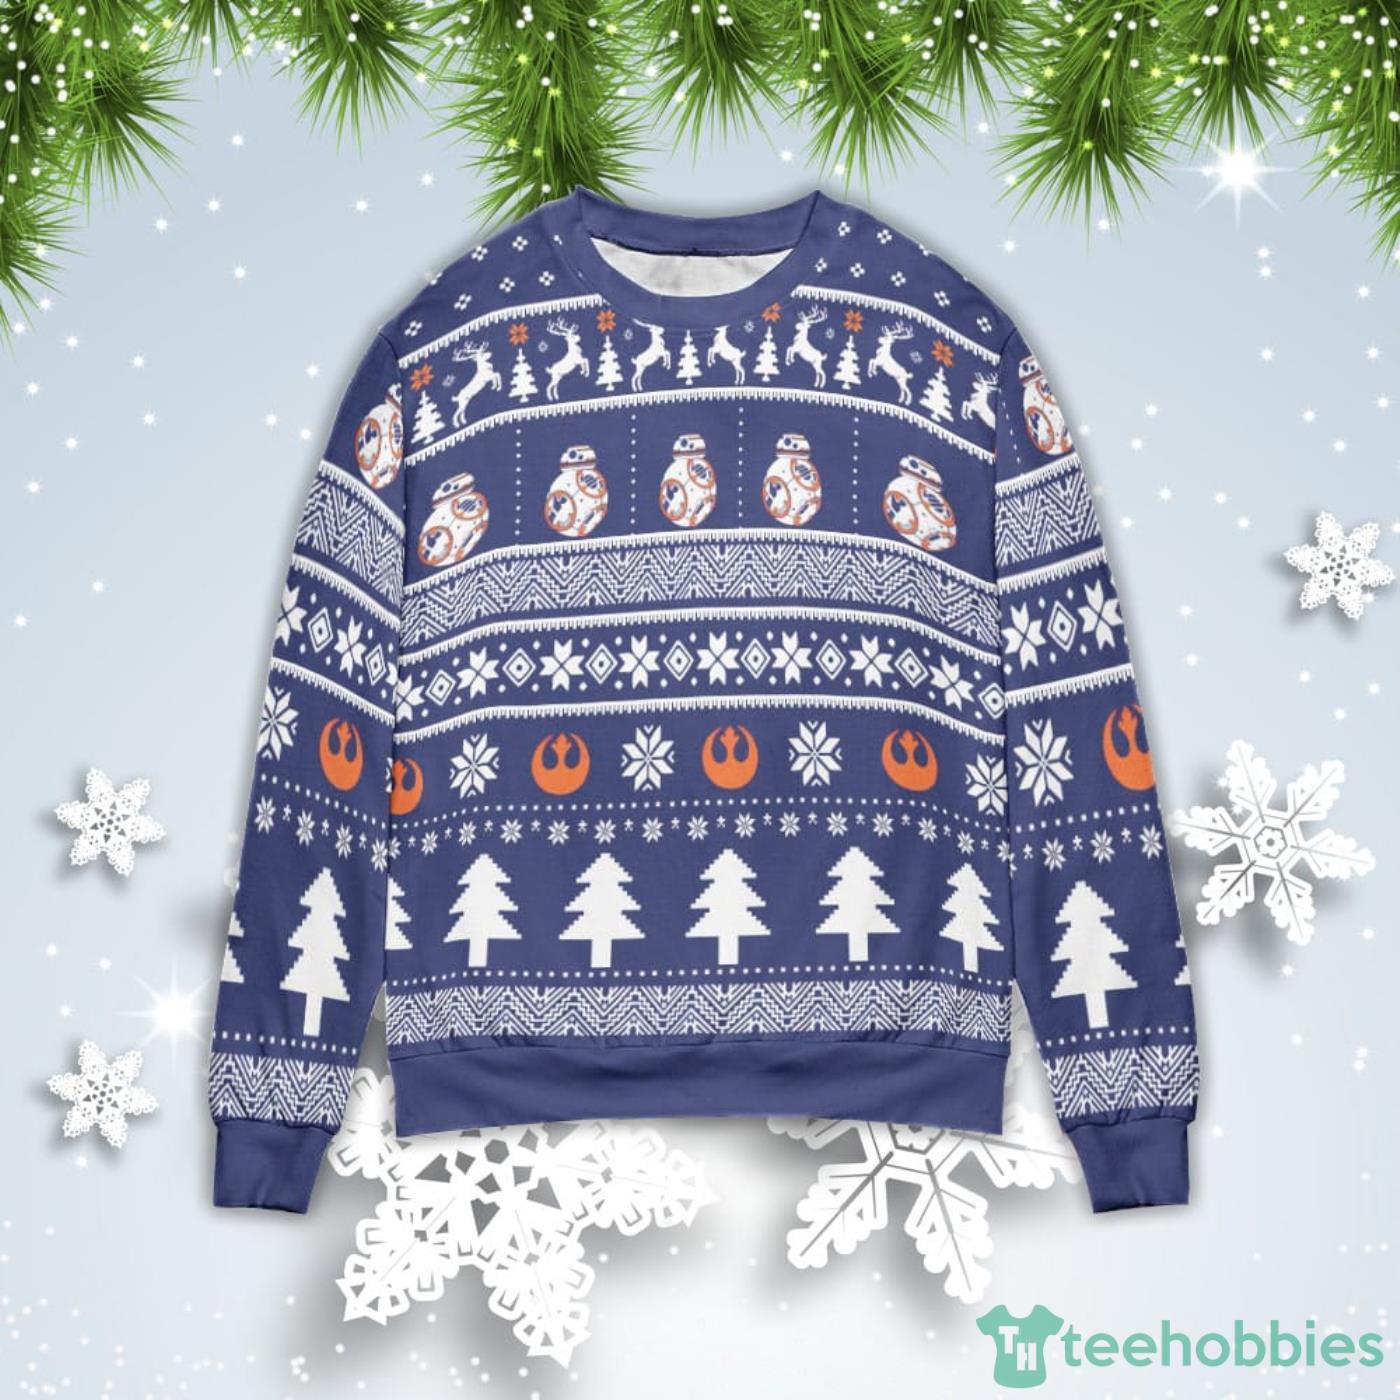 Robot BB8 Christmas Gift Ugly Christmas Sweater Product Photo 1